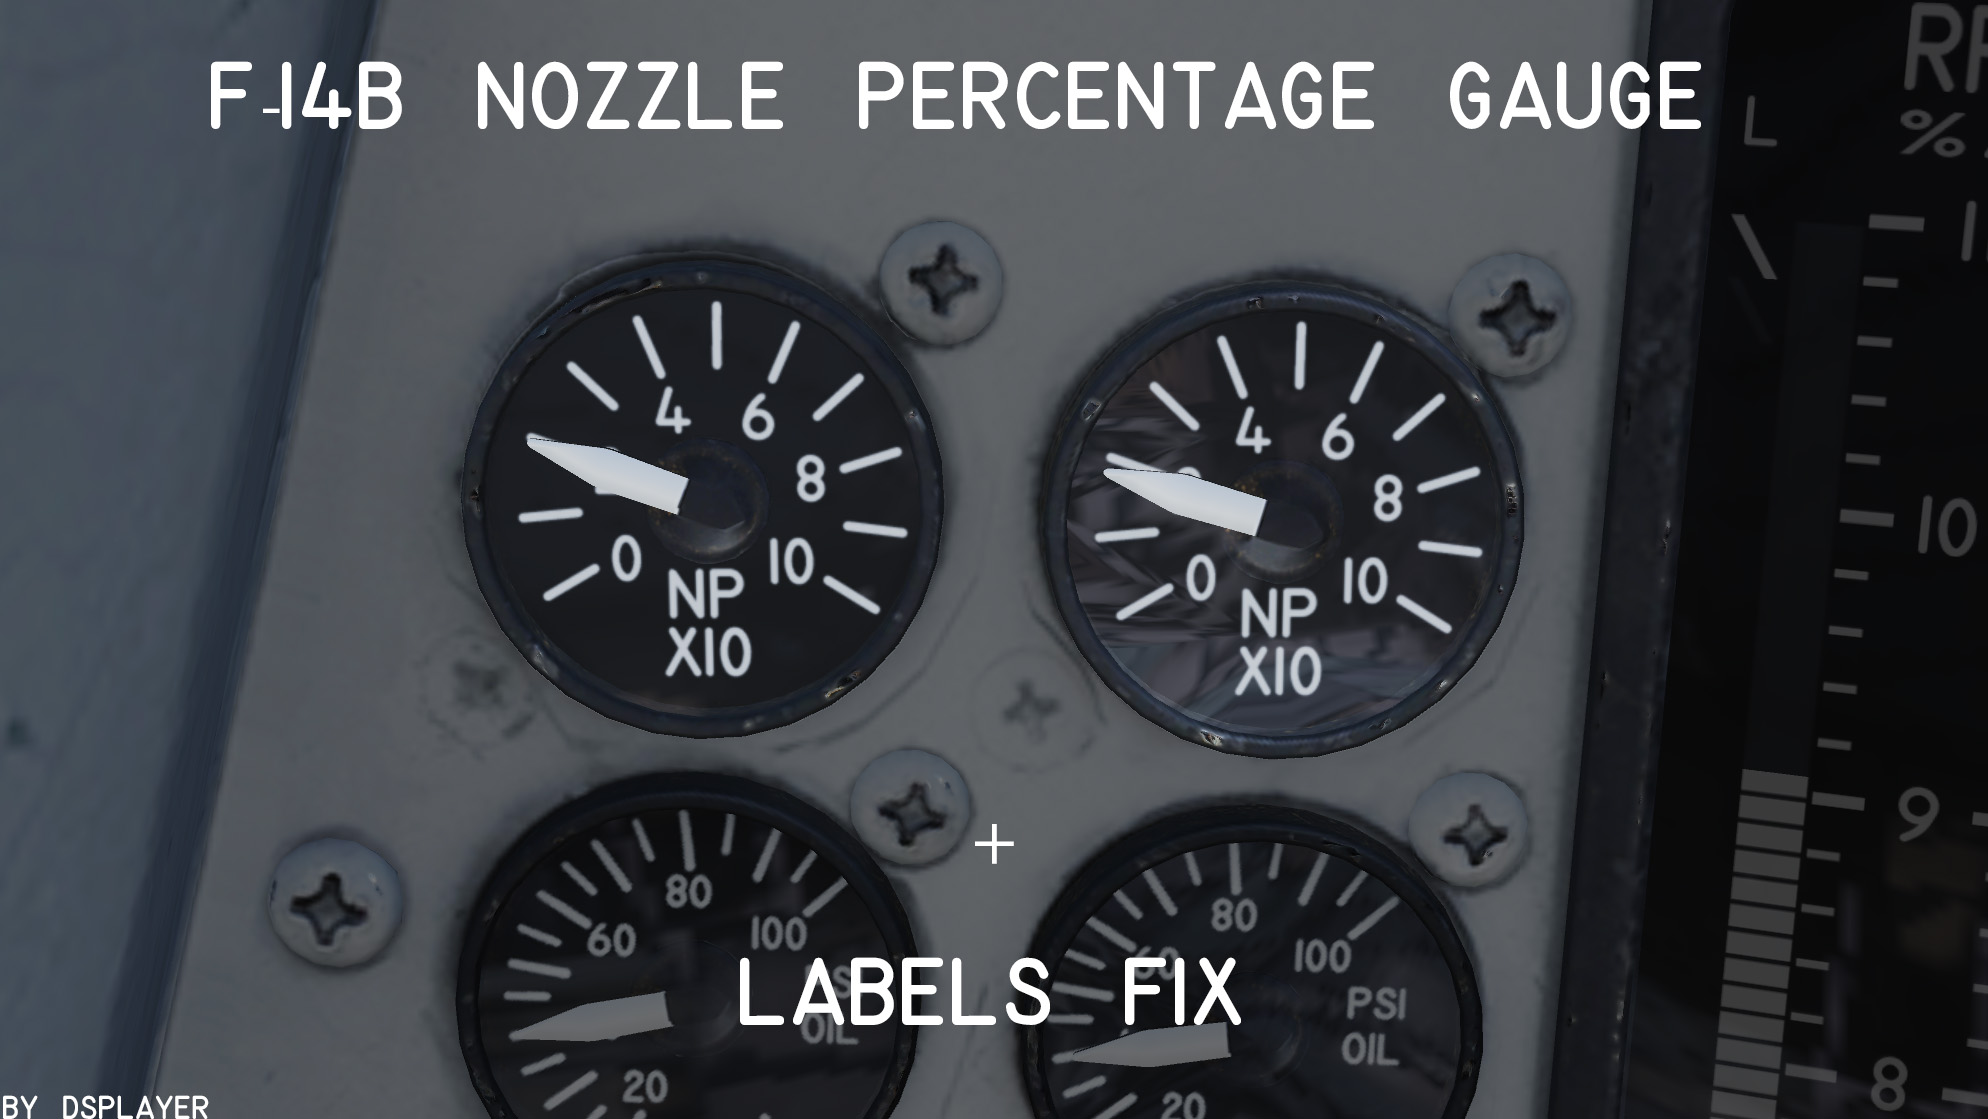 F-14B Nozzle Percentage Gauge + Labels Fix (V1.3)